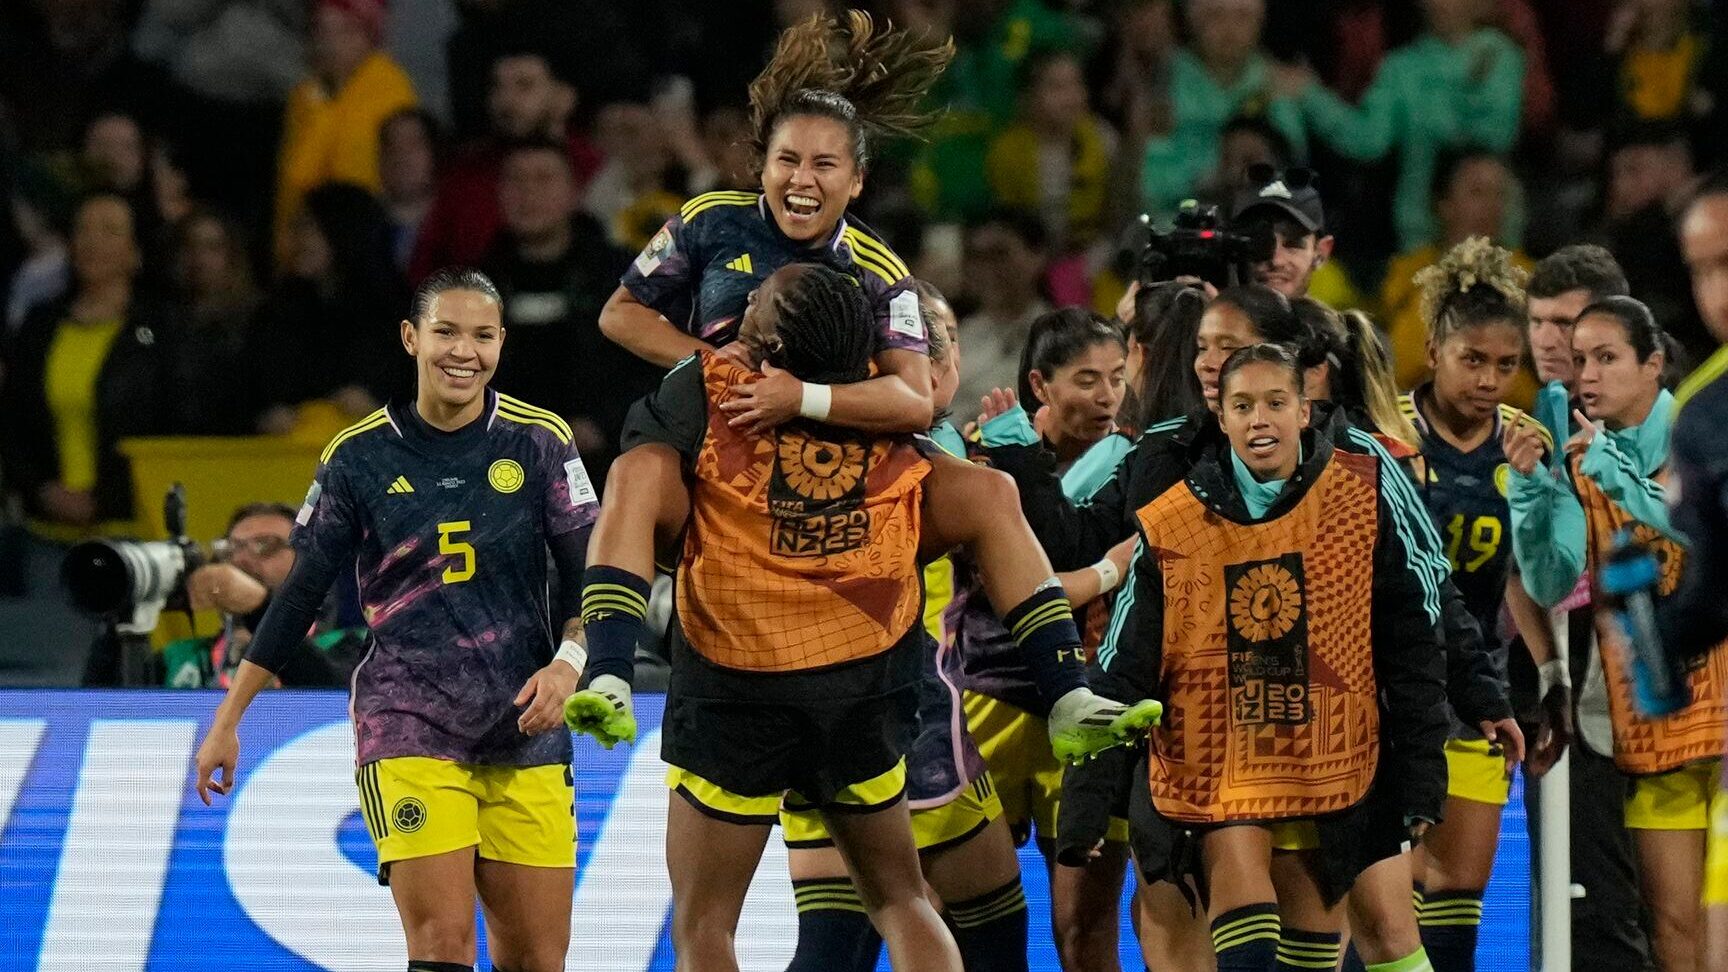 Historia de los Partidos del Mundial Femenino: Un Repaso por los Torneos y Resultados más Relevantes